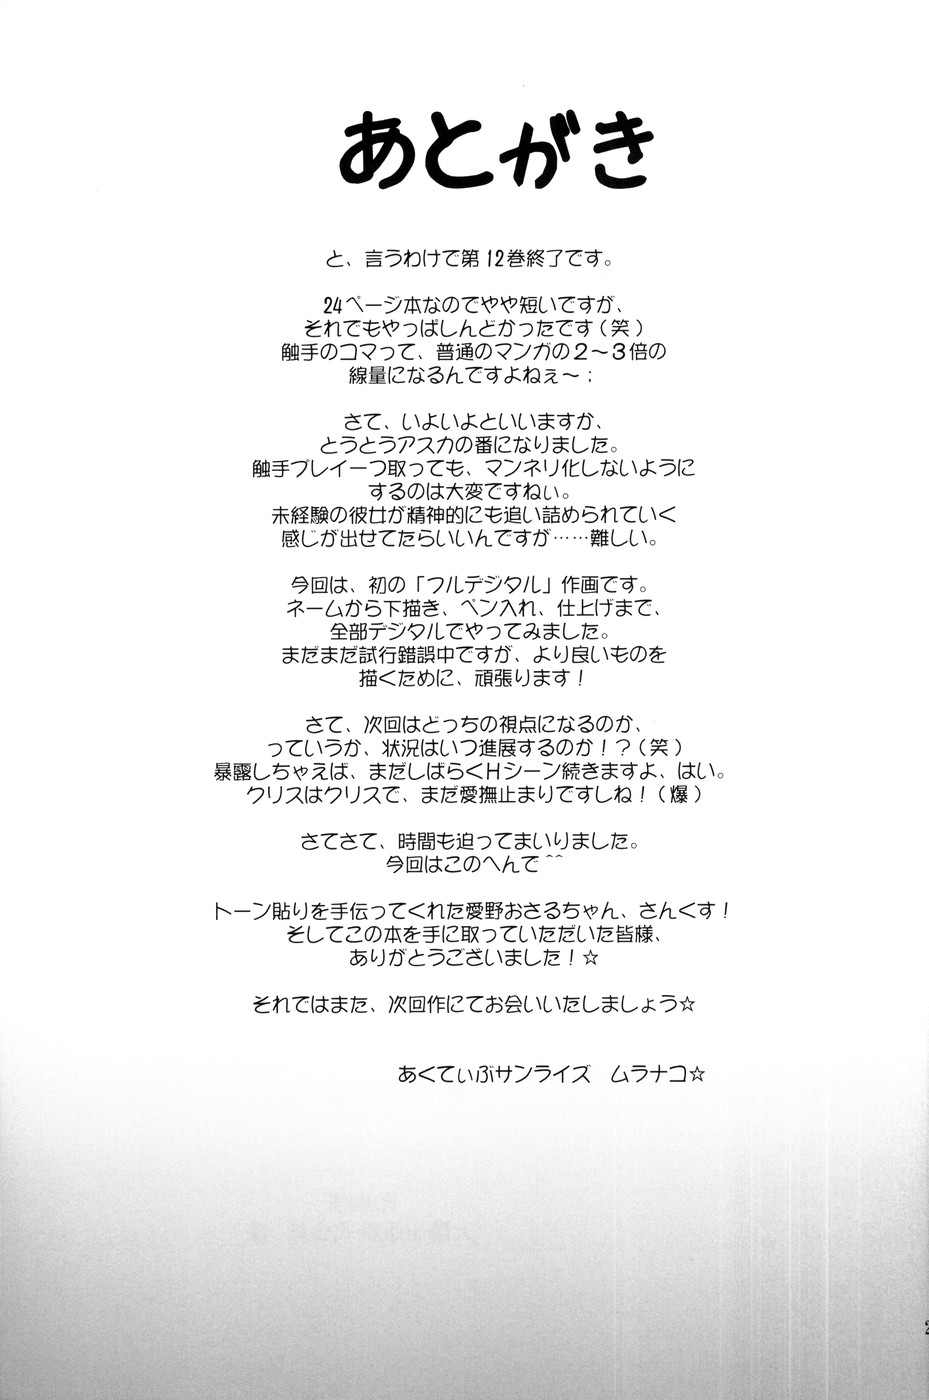 (C78) [Active Sunrise (Muranako)] PARTY SHIFT XII (Original) (C78) [あくてぃぶサンライズ (ムラナコ)] PARTY SHIFT XII～パーテイシフト ～ (オリジナル)